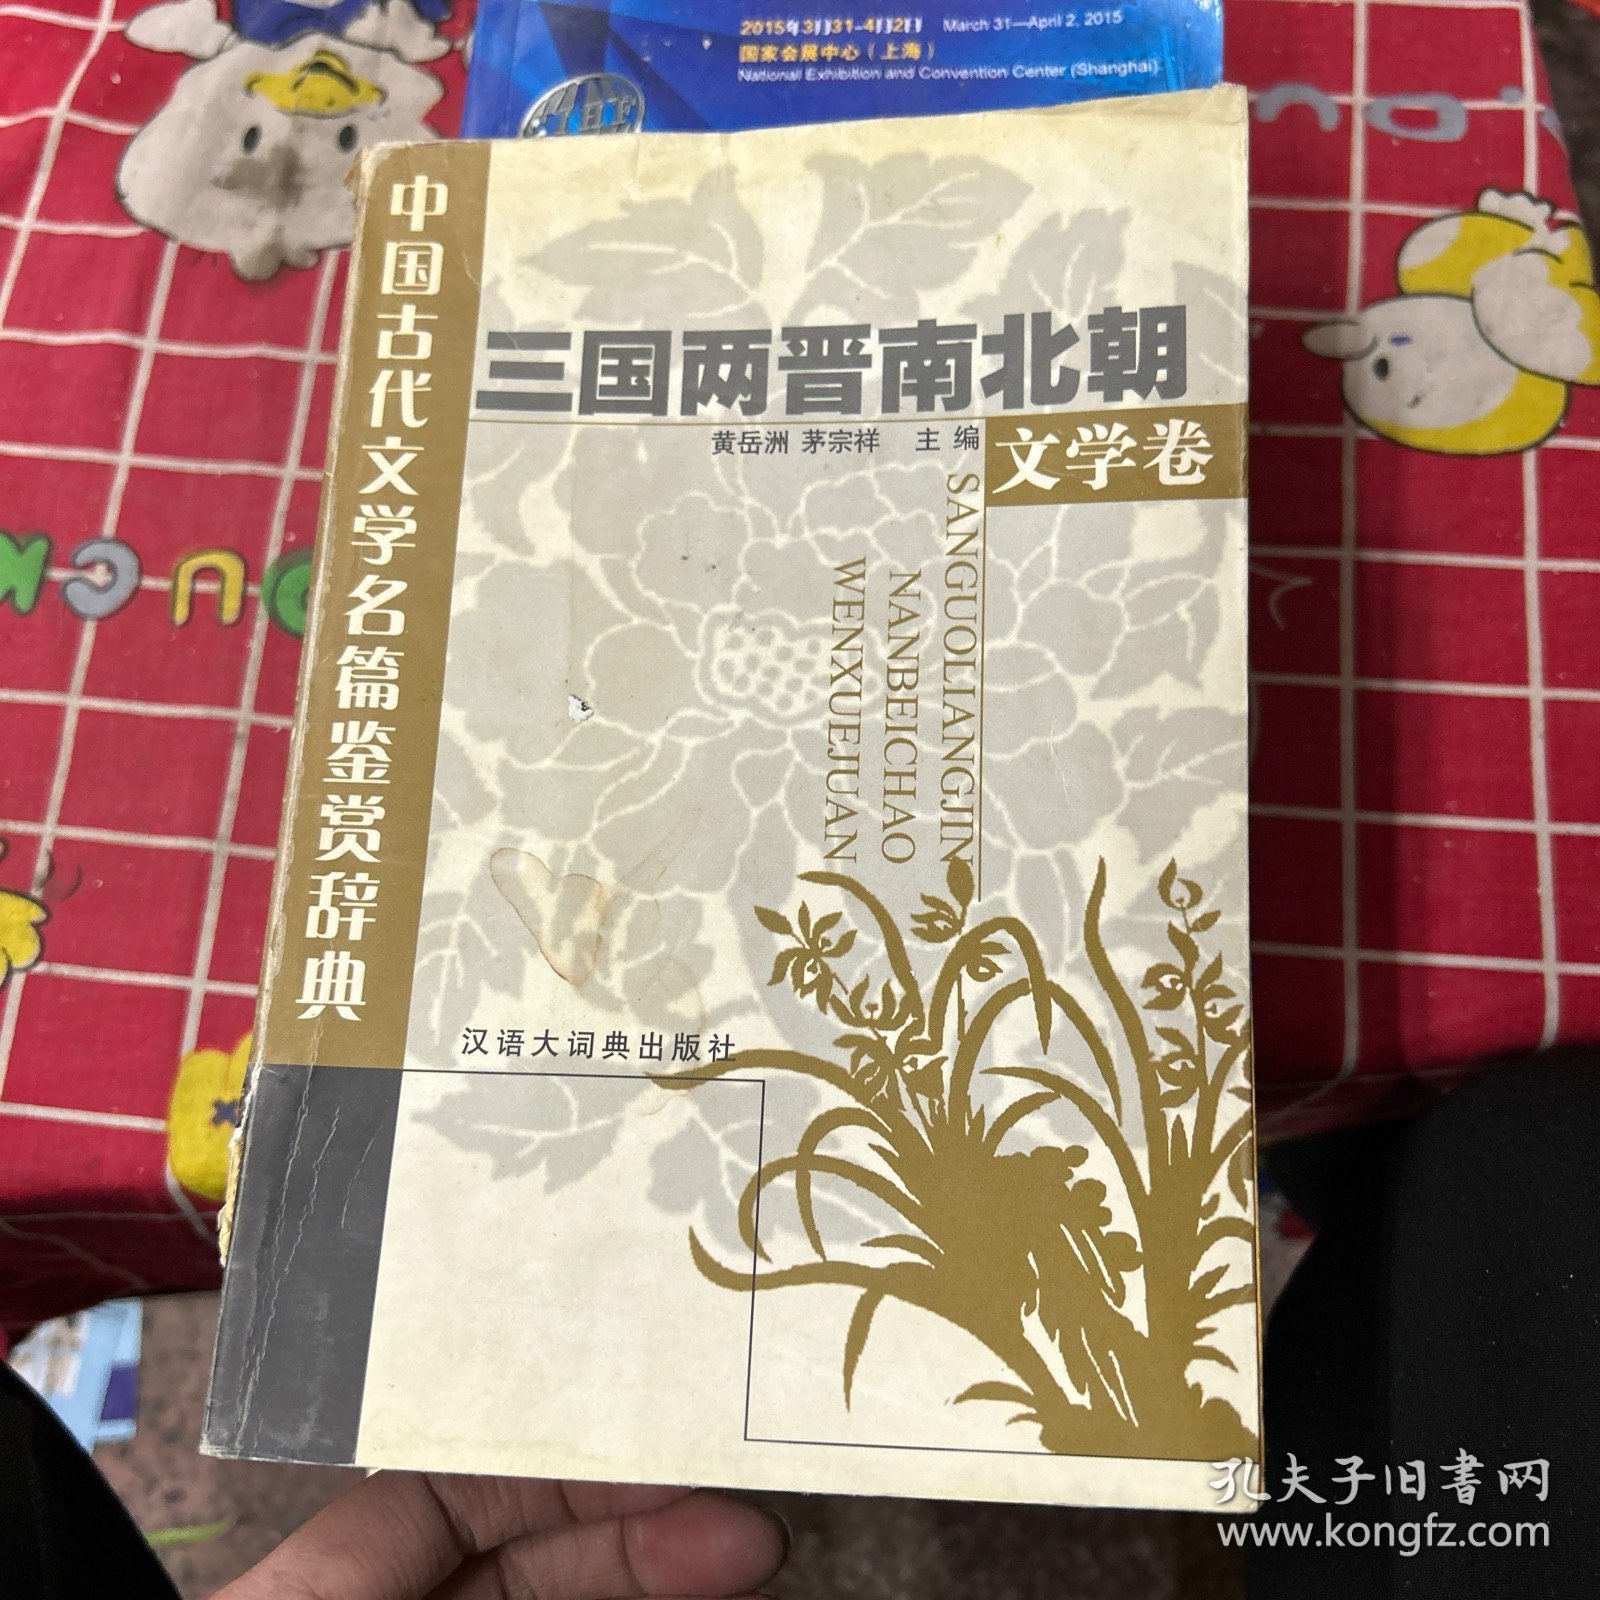 中国古代文学名篇鉴赏辞典.三国两晋南北朝文学卷